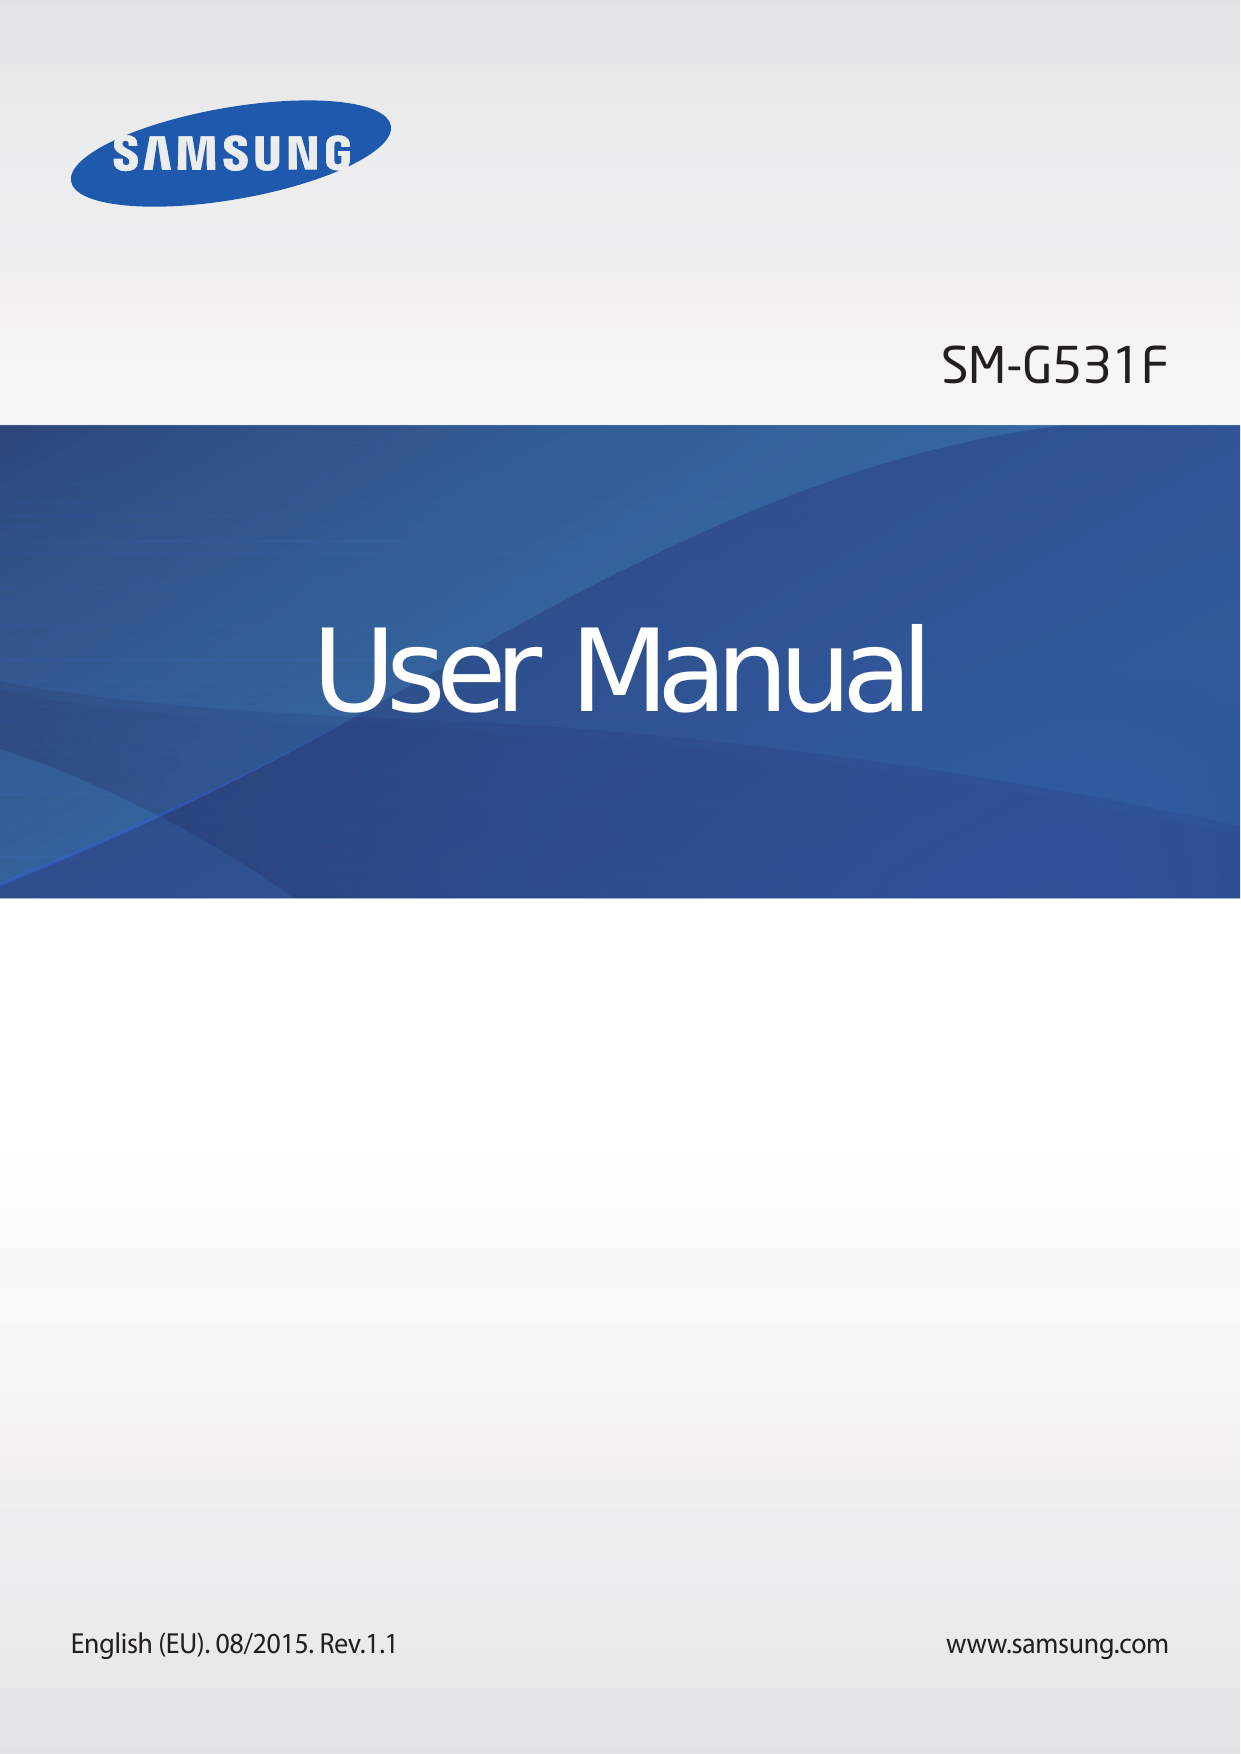 SM-G531FUser ManualEnglish (EU). 08/2015. Rev.1.1www.samsung.com